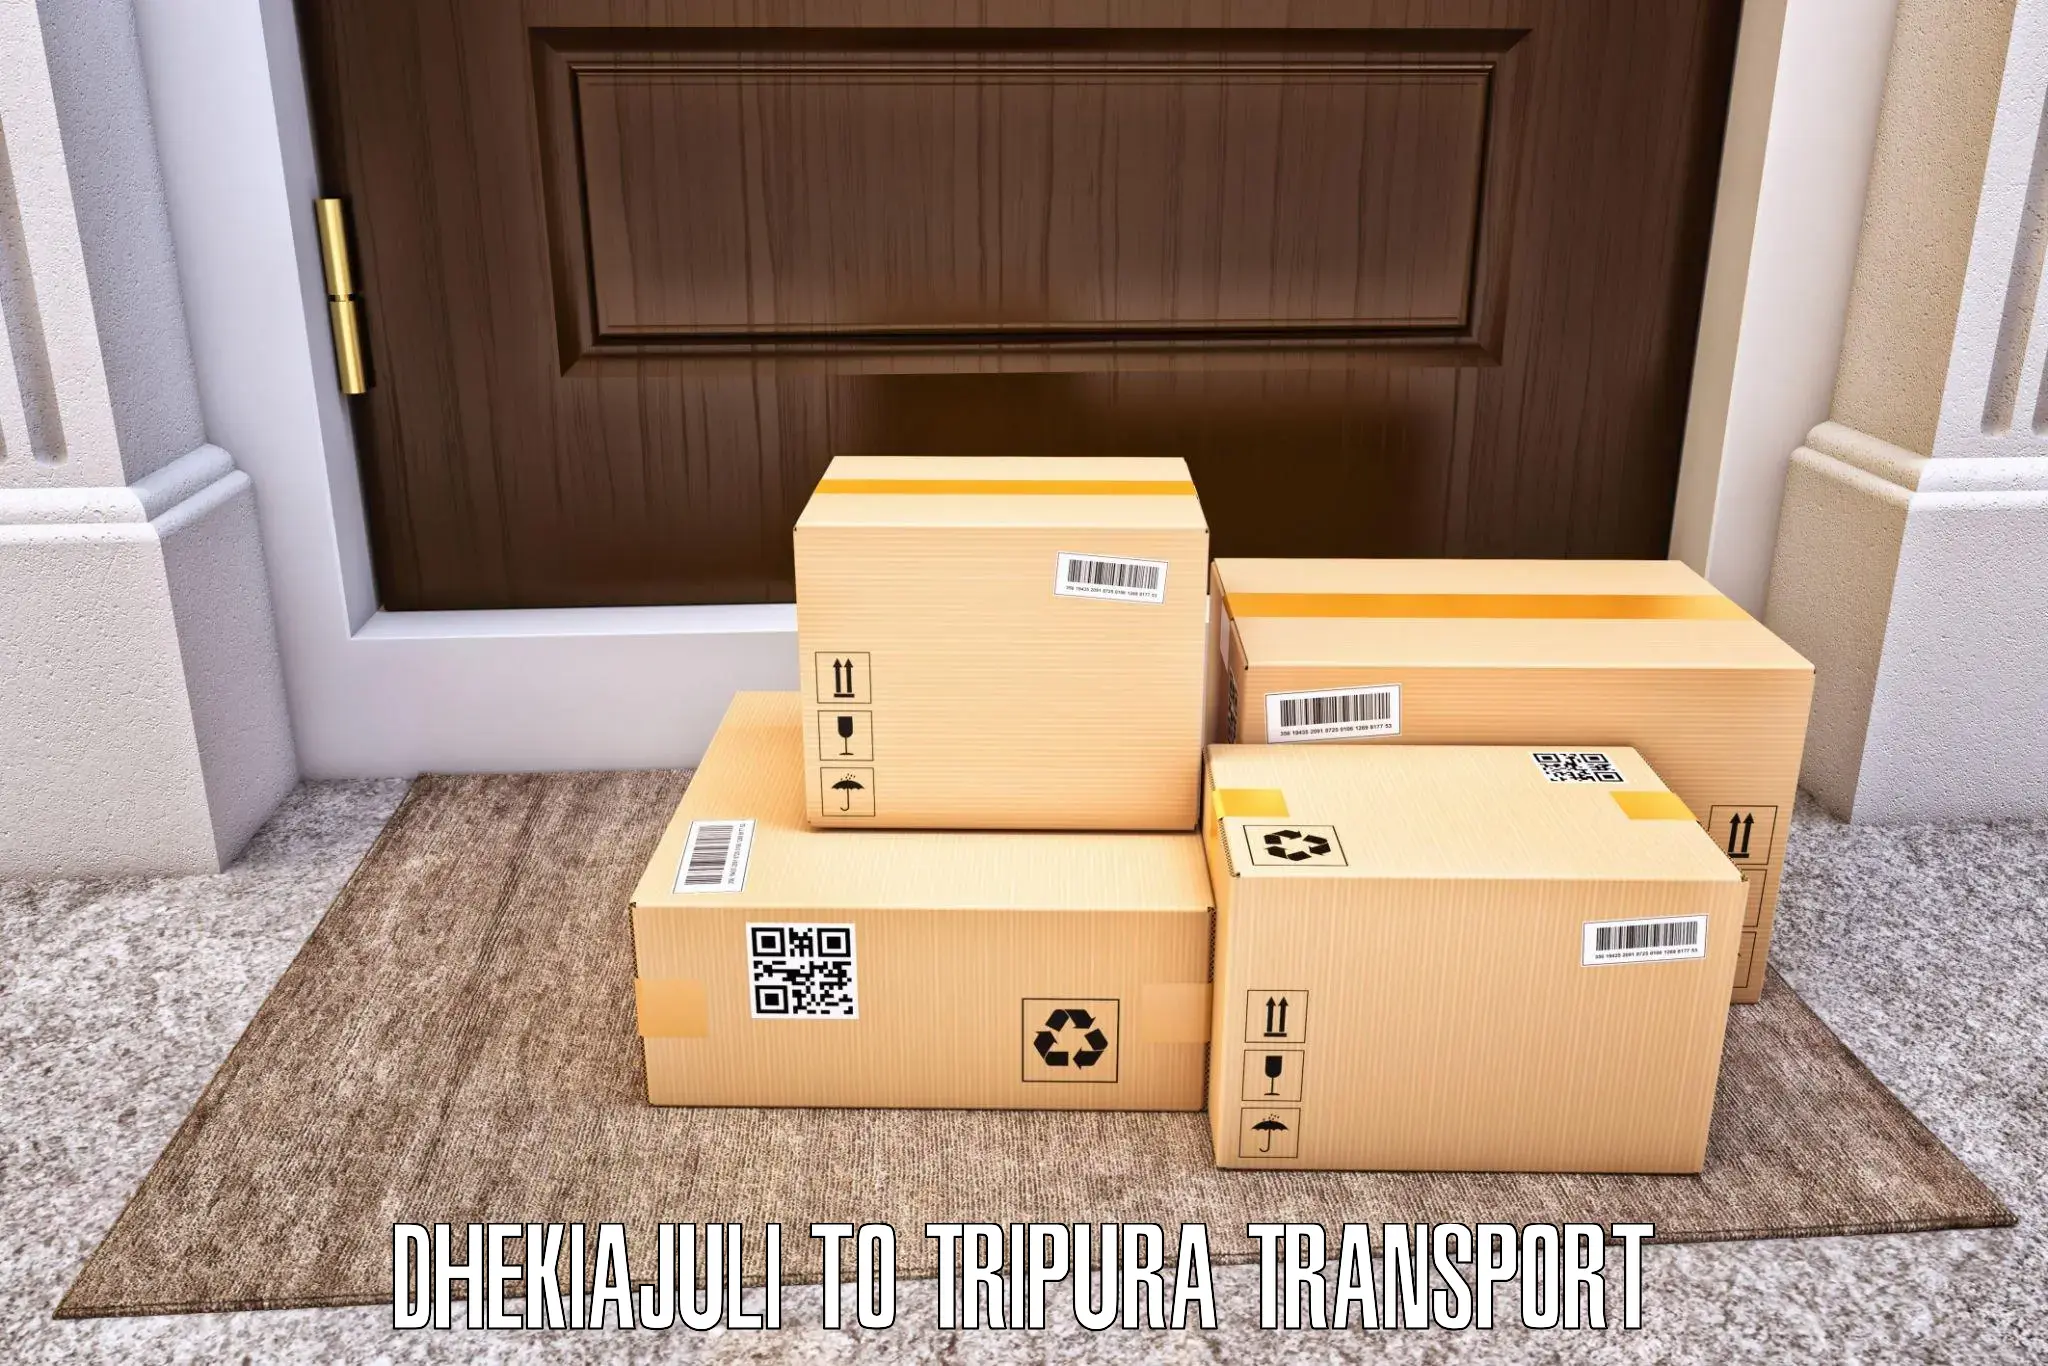 Air cargo transport services Dhekiajuli to Agartala